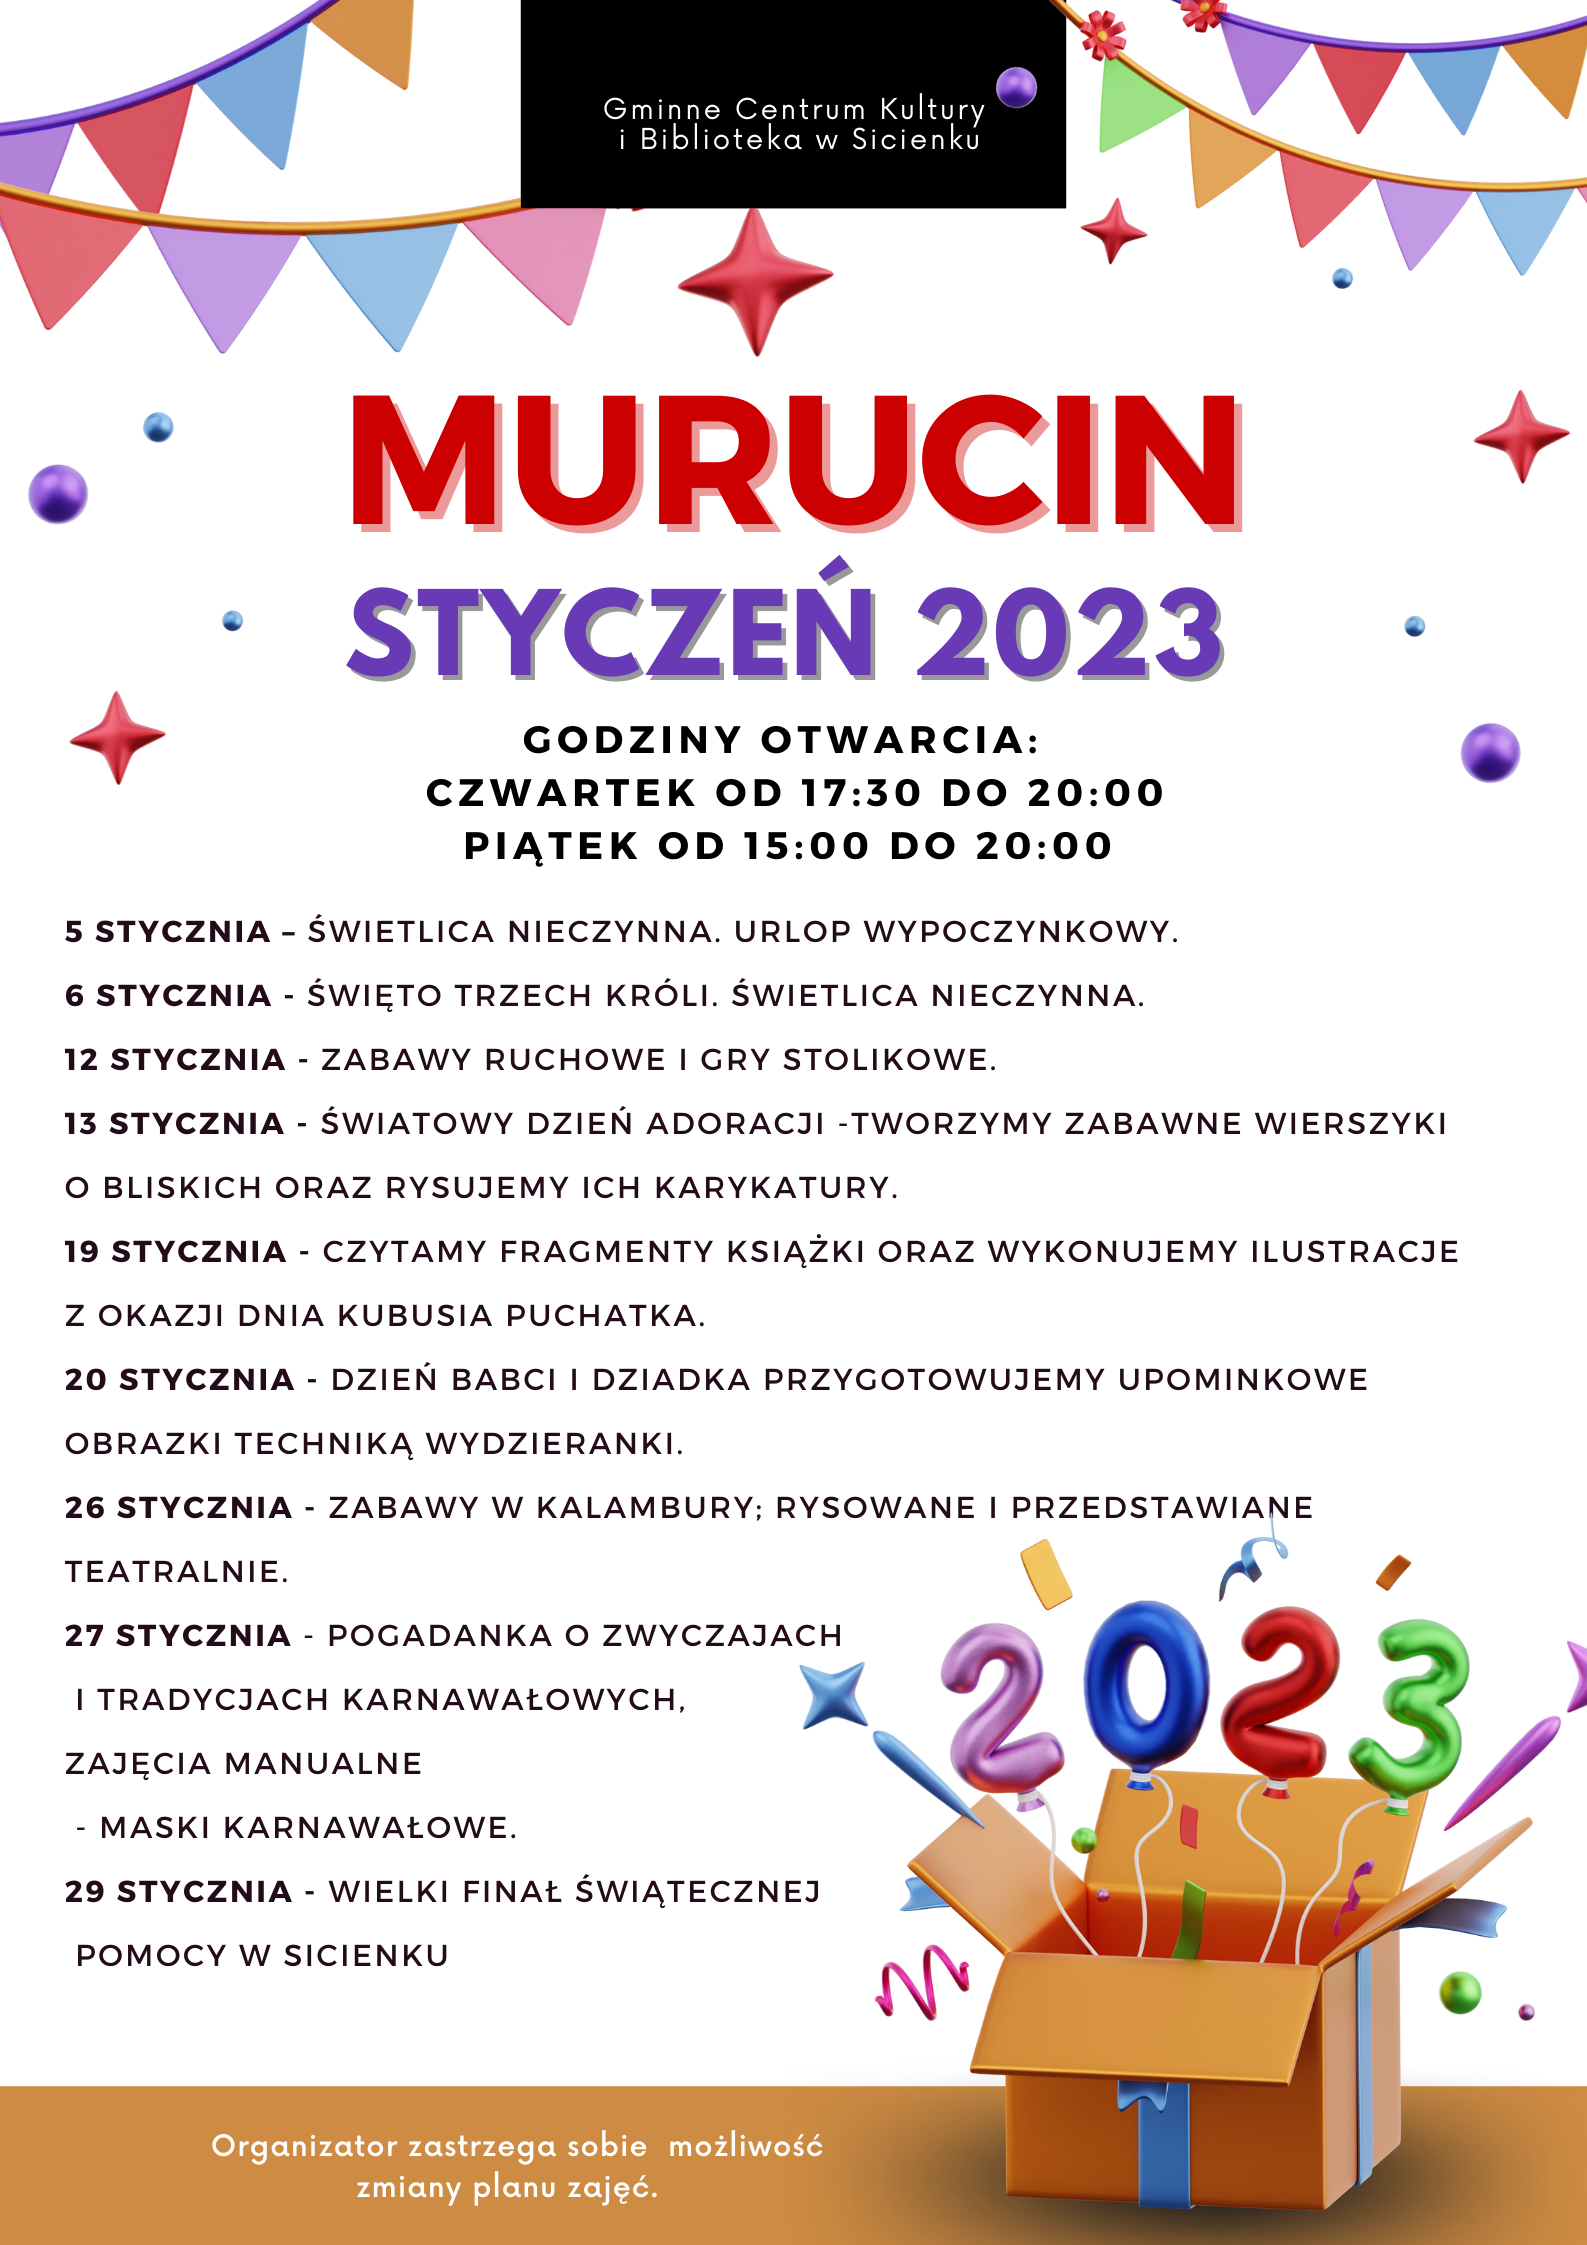 Plan pracy - styczeń 2023 Murucin